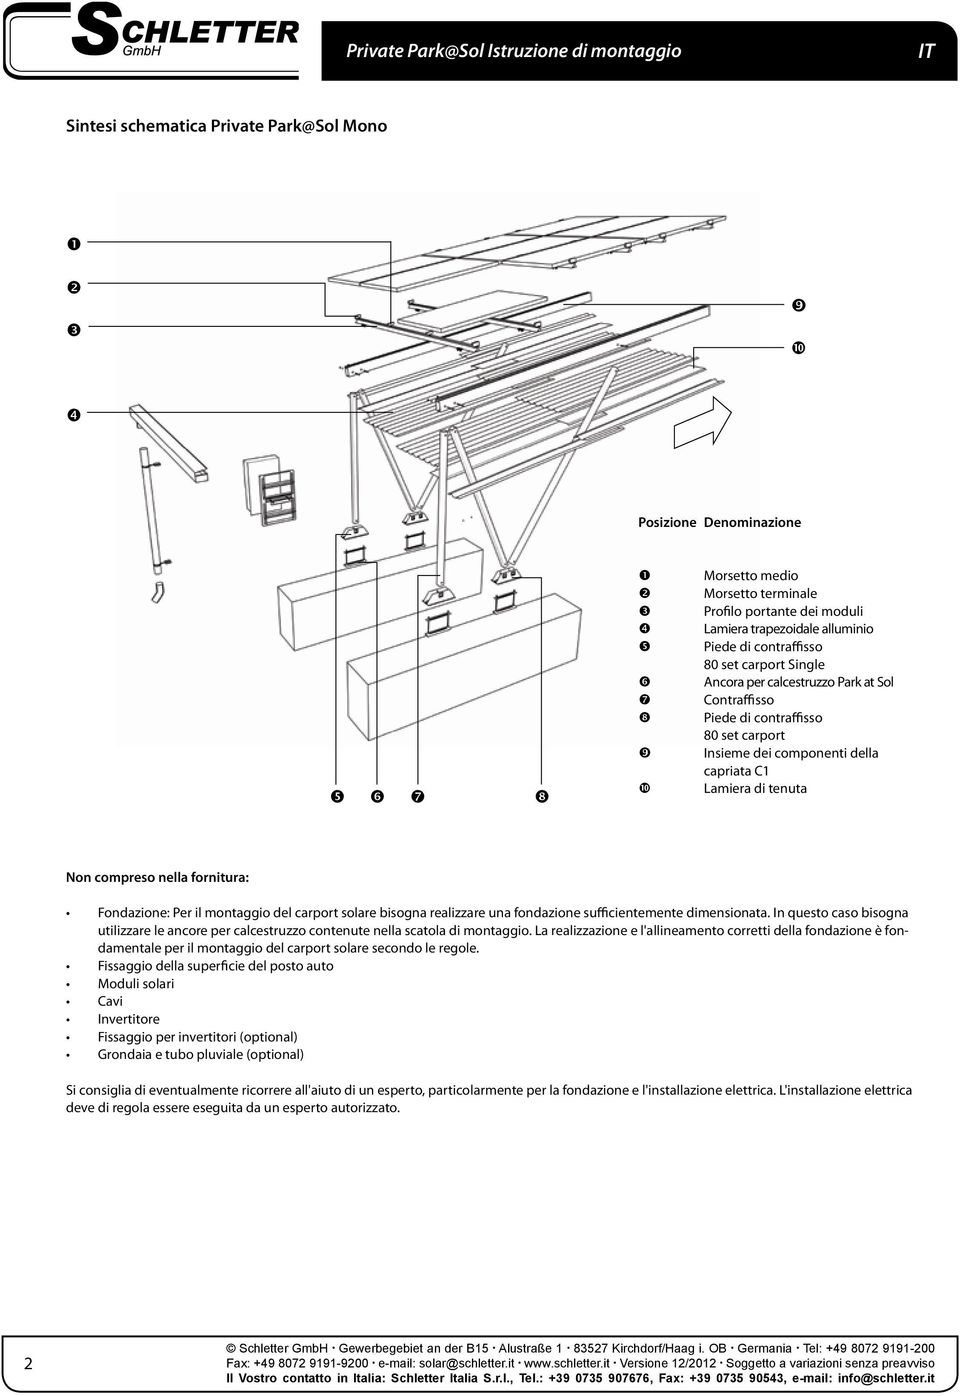 il montaggio del carport solare bisogna realizzare una fondazione sufficientemente dimensionata. In questo caso bisogna utilizzare le ancore per calcestruzzo contenute nella scatola di montaggio.